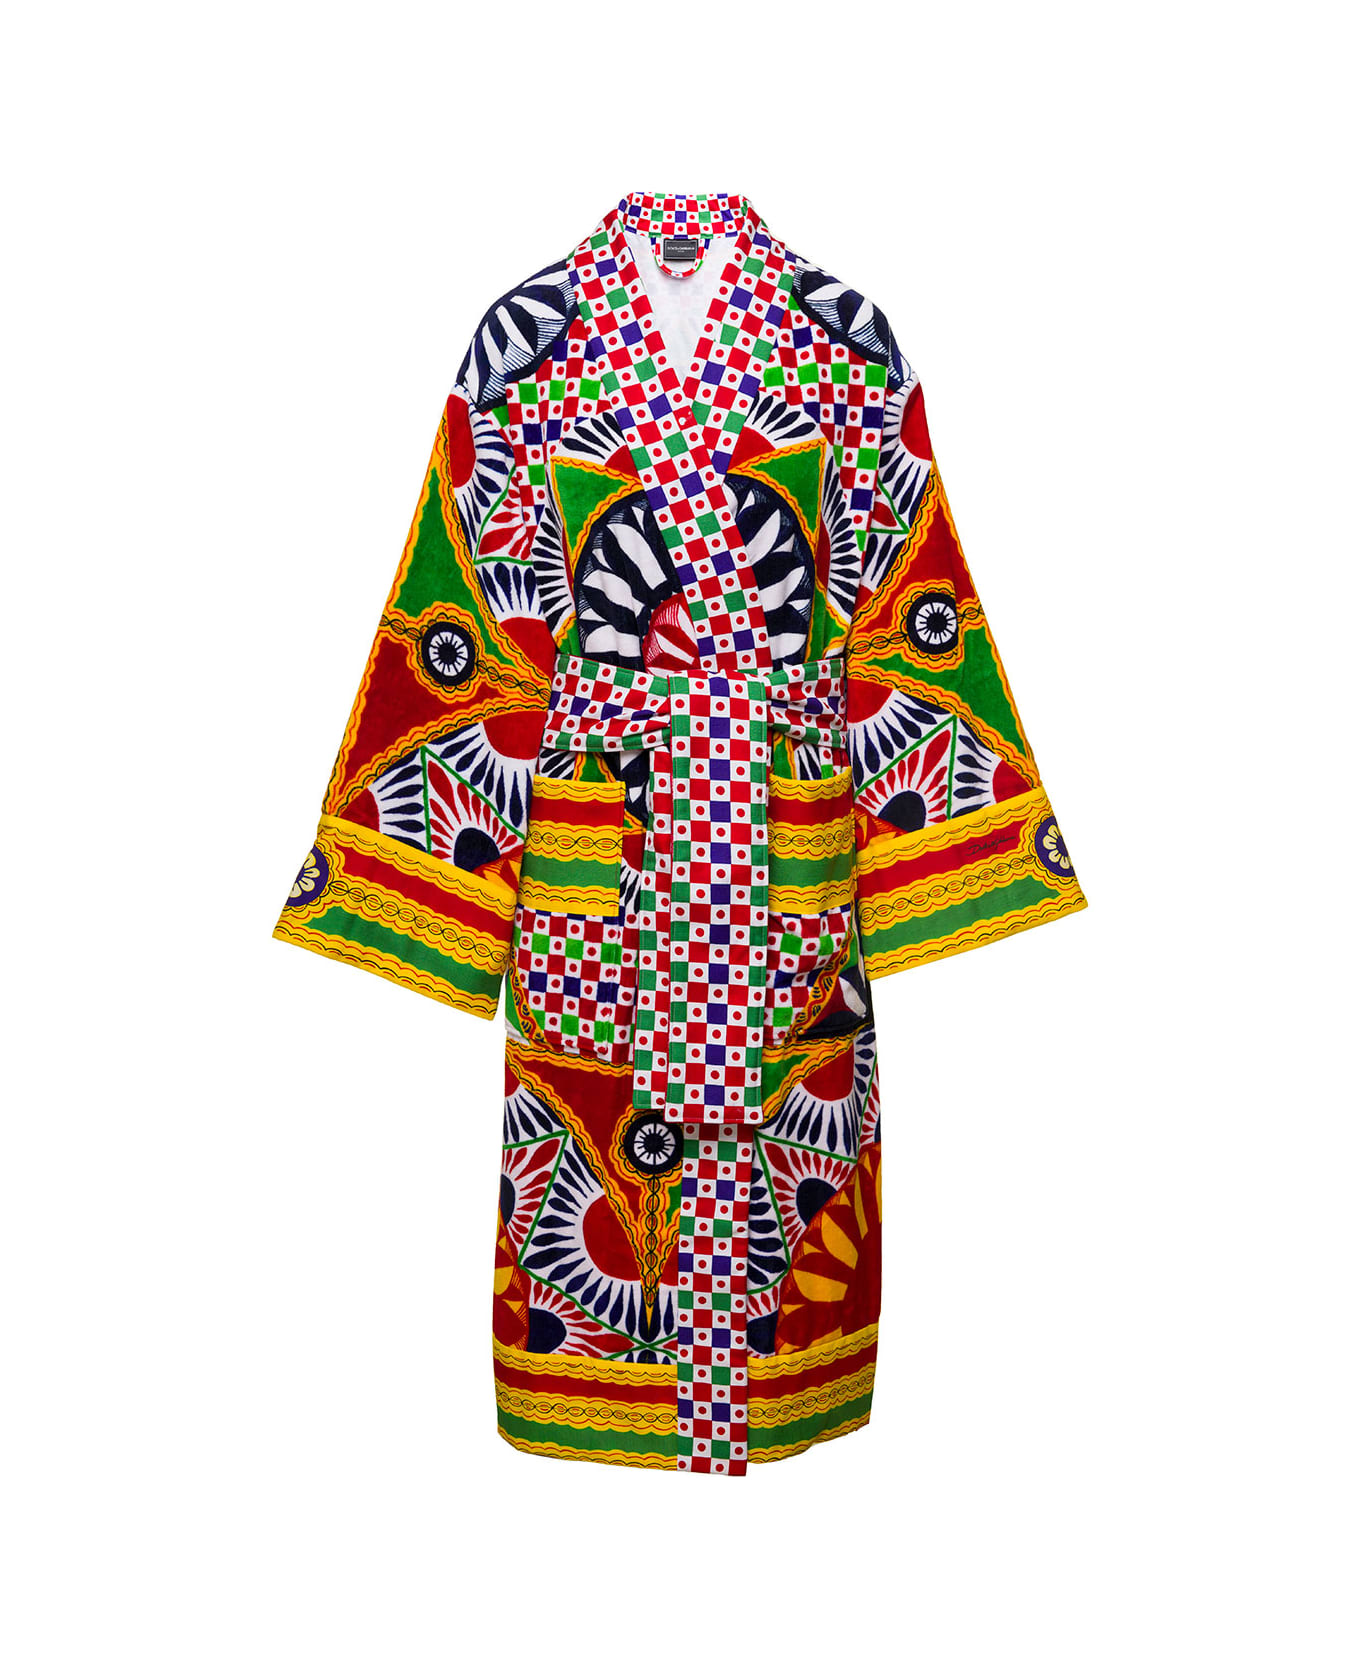 Dolce & Gabbana Multicolor Kimono Bathrobe With All-over Carretto Siciliano Print In Cotton Dolce & Gabbana - Multicolor